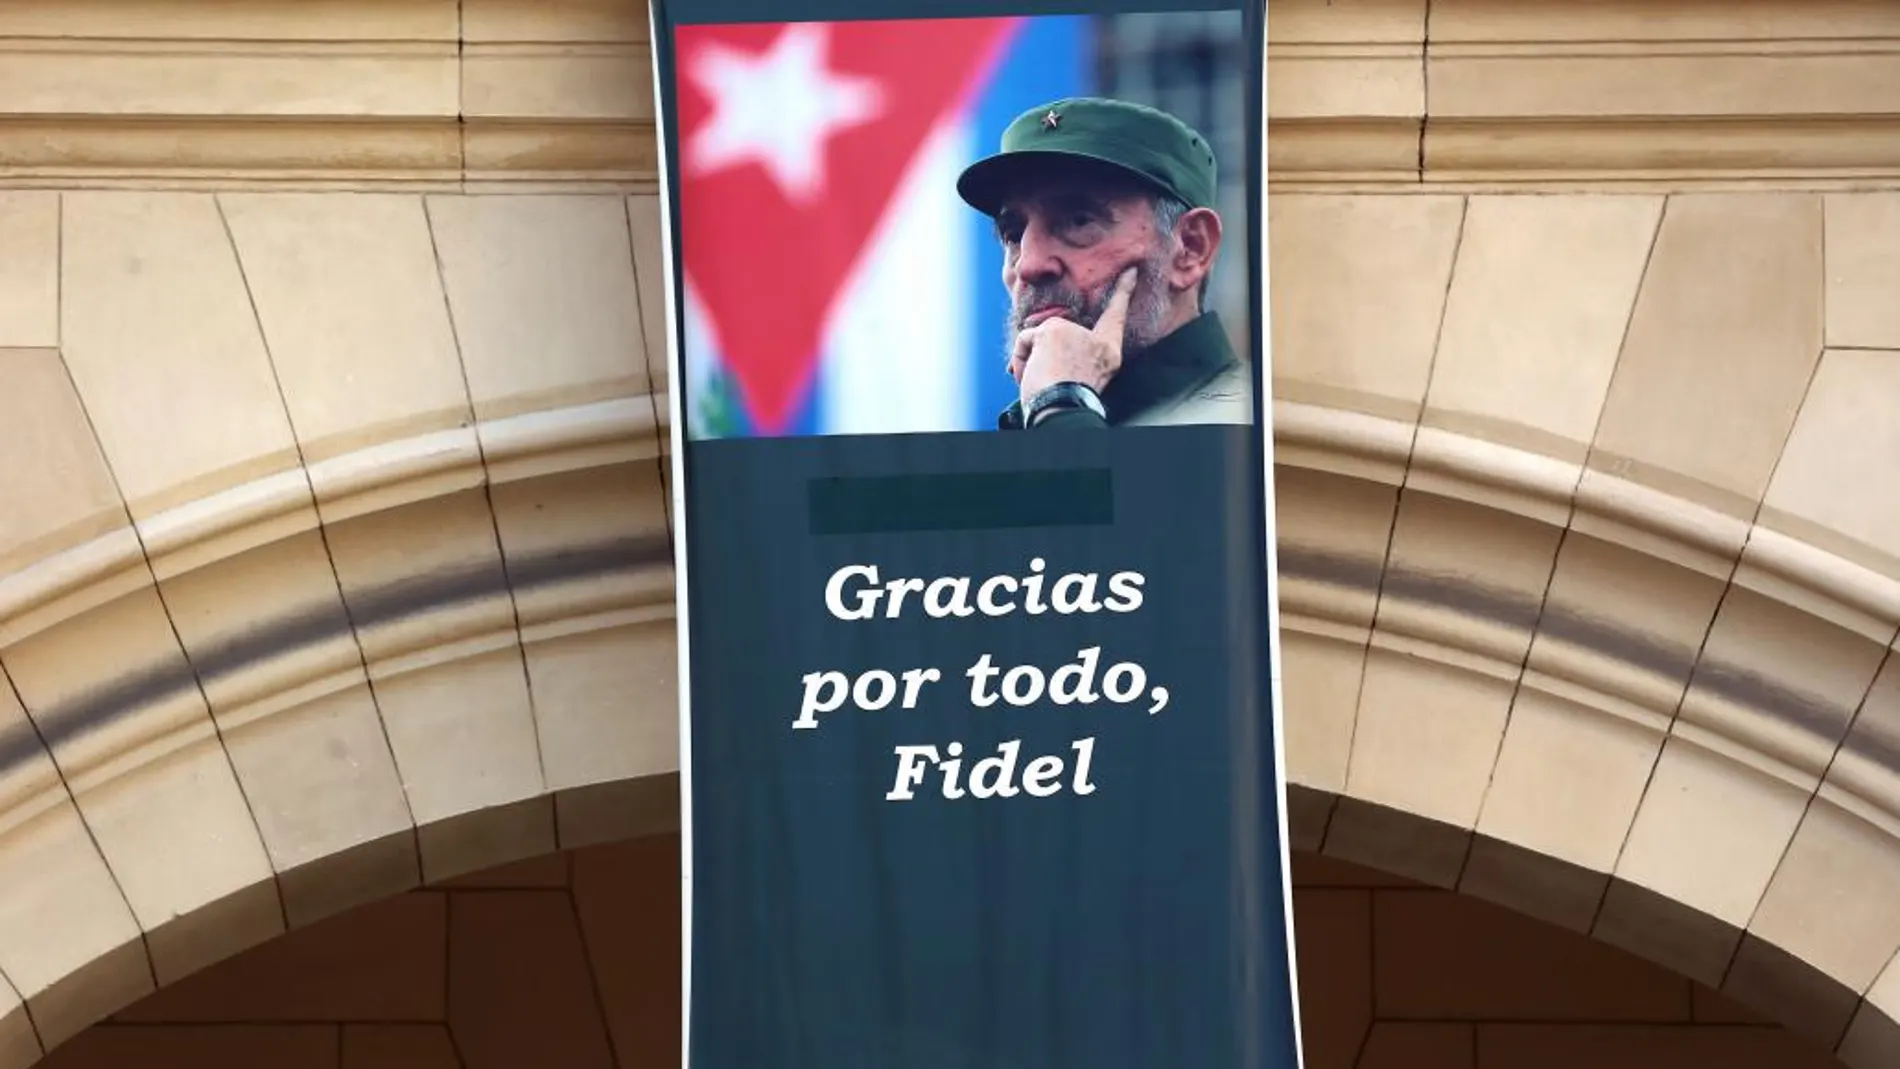 Un cartel con la imagen del fallecido líder Fidel Castro permanece en la fachada de un edificio hoy, martes 27 de diciembre de 2016, en La Habana